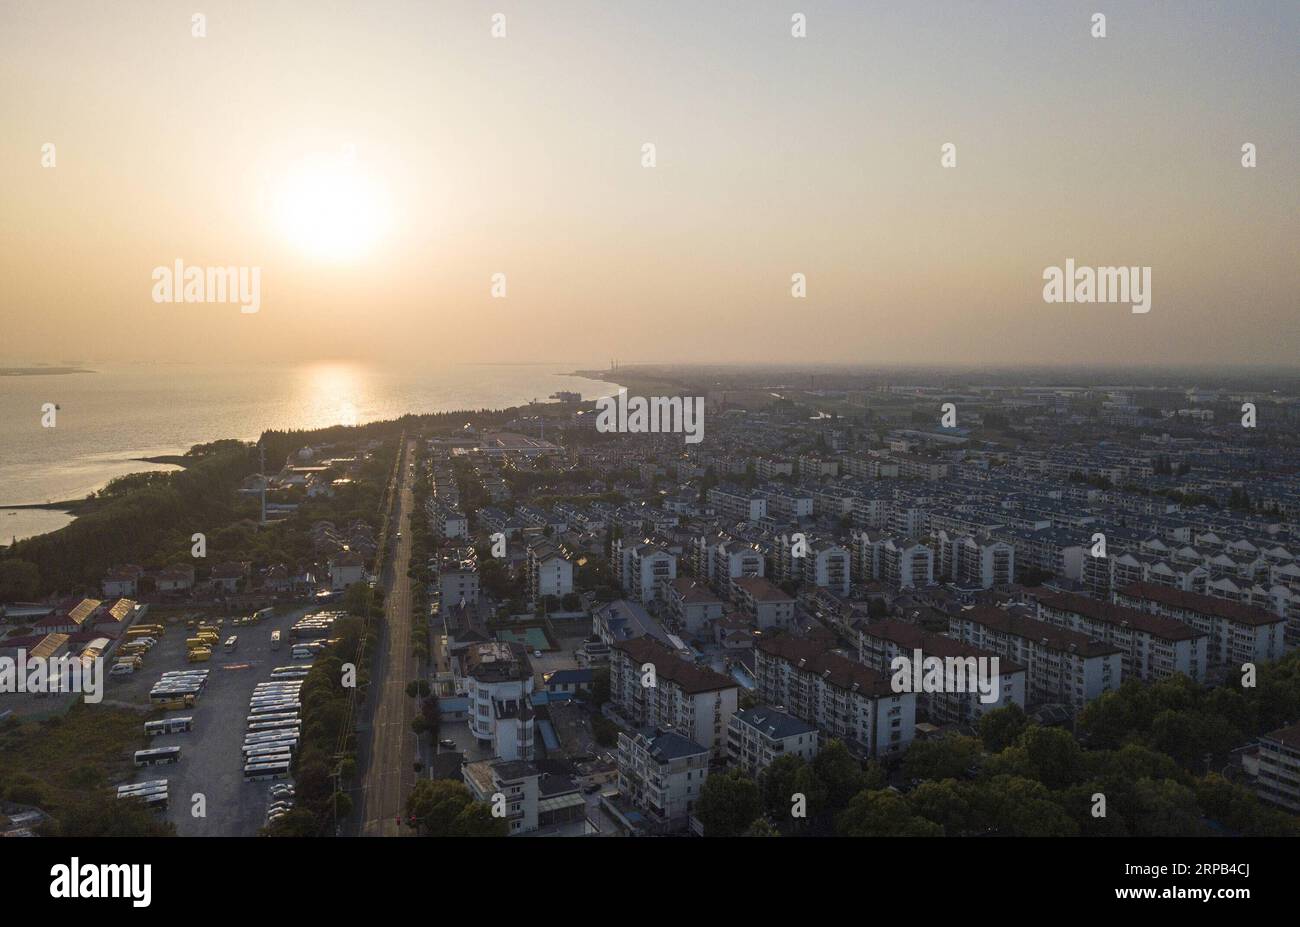 (190527) -- SHANGHAI, 27. Mai 2019 (Xinhua) -- Luftaufnahme, aufgenommen am 25. Mai 2019, zeigt die Sonnenuntergangslandschaft in der Chengqiao Township des Chongming Bezirks, Ost-chinesisches Shanghai. Shanghai liegt in der Mitte der Ostküste Chinas und der Mündung des Yangtze-Flusses und ist Chinas größtes Wirtschaftszentrum sowie das regionale Drehkreuz der Yangtze-Delta-Region. Als Hinterhof dieser wohlhabenden Metropole ist Chongming Island, eines der ländlichen Bezirke Shanghais, auf dem Weg, sein Ziel zu erreichen, eine ökologische Insel von Weltklasse zu entwickeln. Die Feuchtgebiete der Insel sind erhalten, und ihre Traditiona Stockfoto